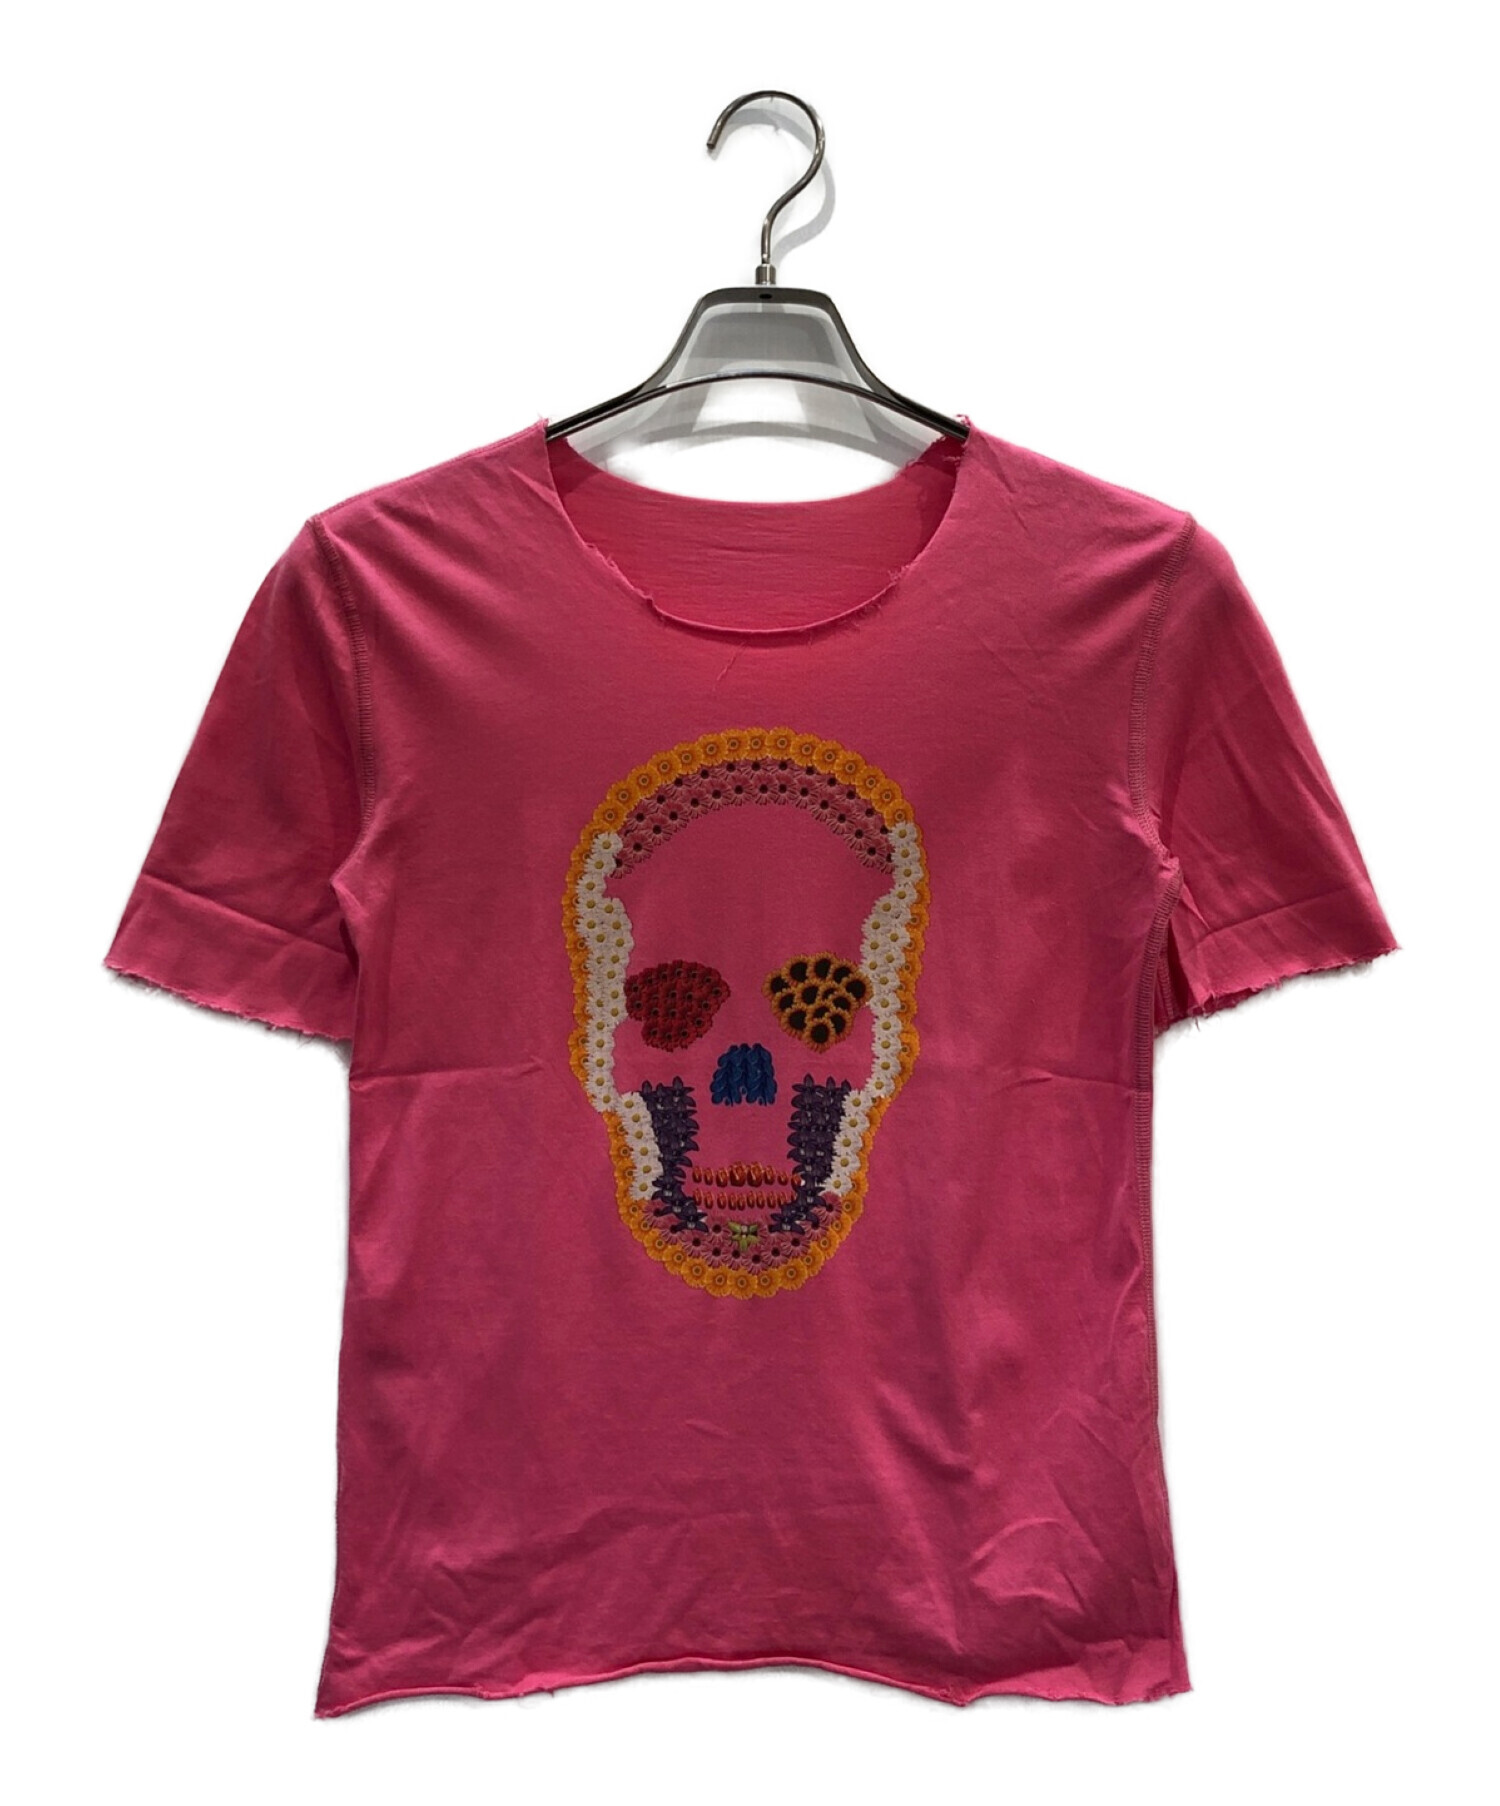 lucien pellat-finet (ルシアン・ペラフィネ) スカルプリントTシャツ ピンク サイズ:S